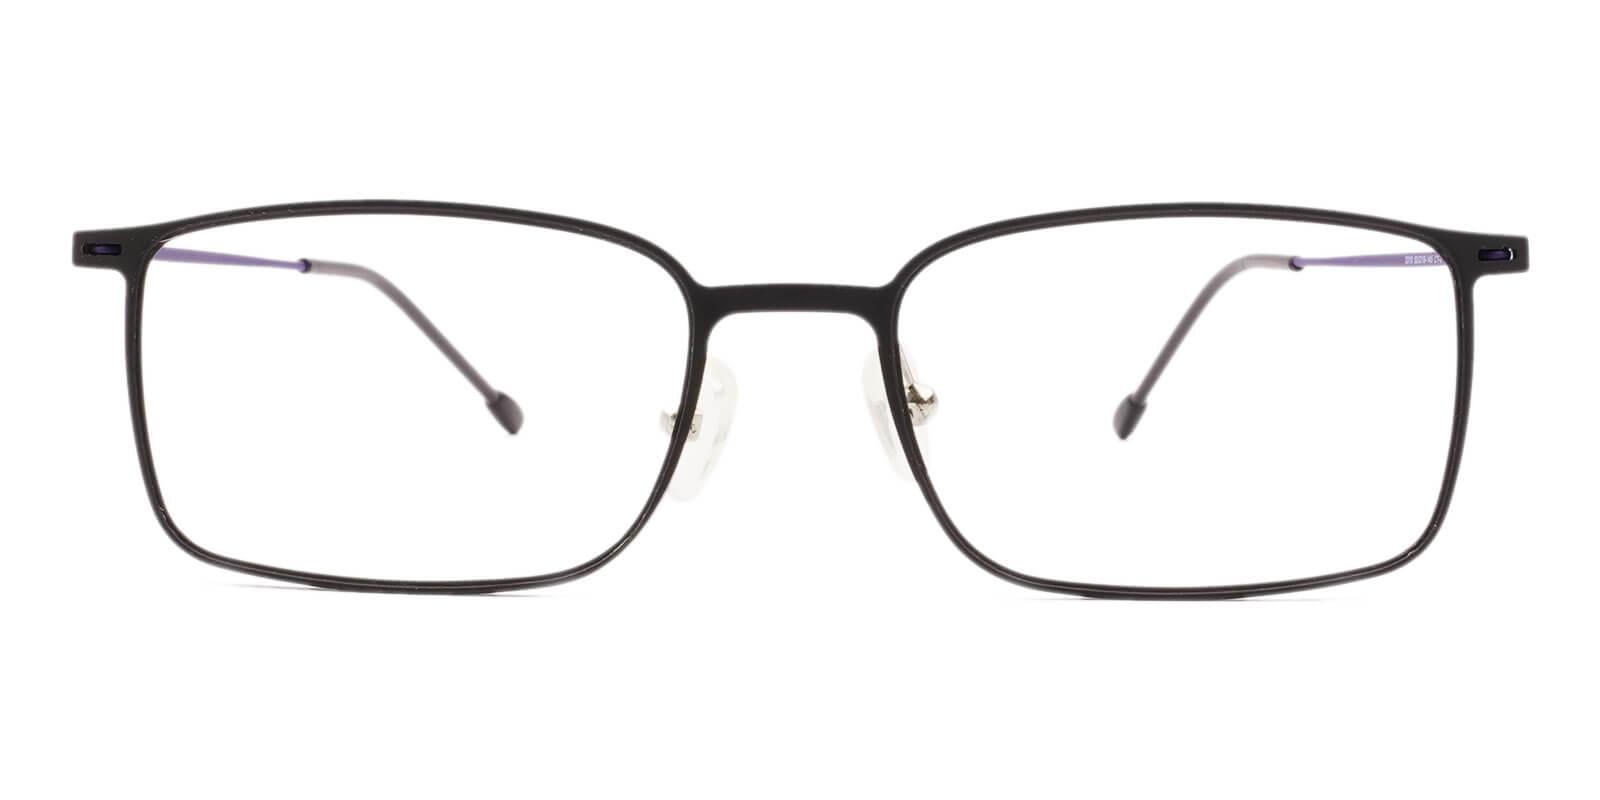 Philadelphia Black Combination Eyeglasses , Lightweight , NosePads Frames from ABBE Glasses